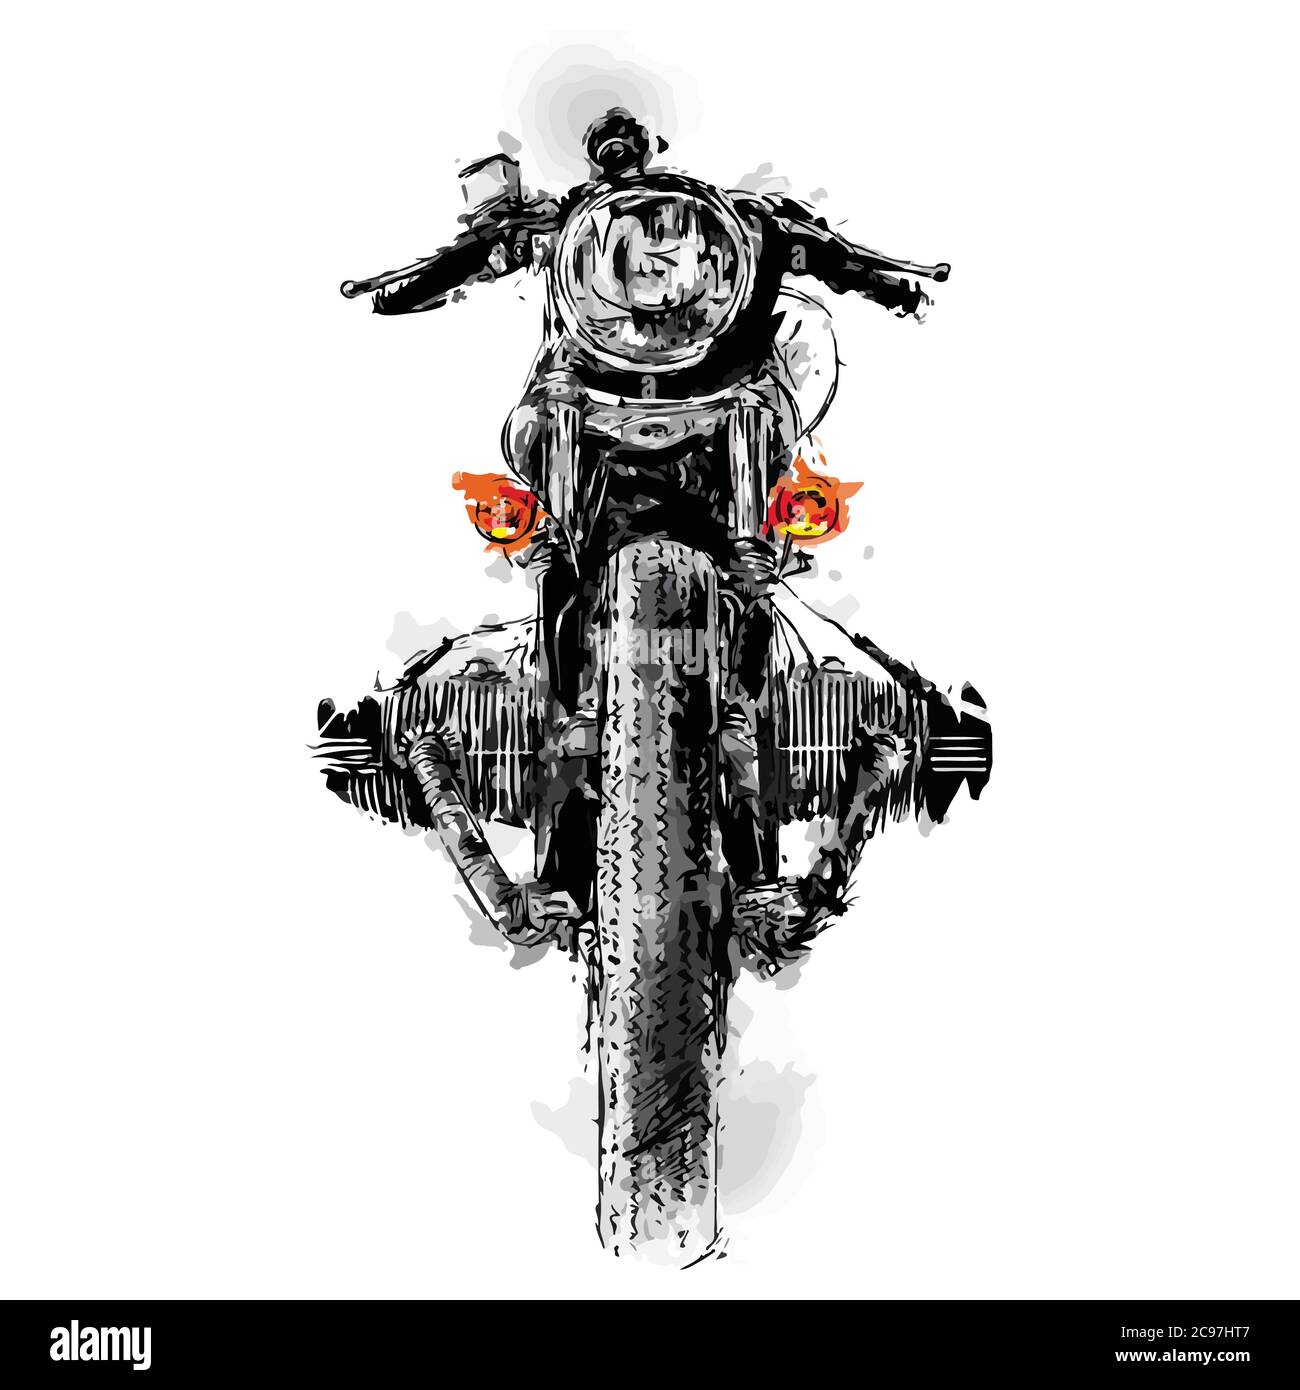 Biker rider moto graphique illustration vecteur art royal Enfield Image  Vectorielle Stock - Alamy